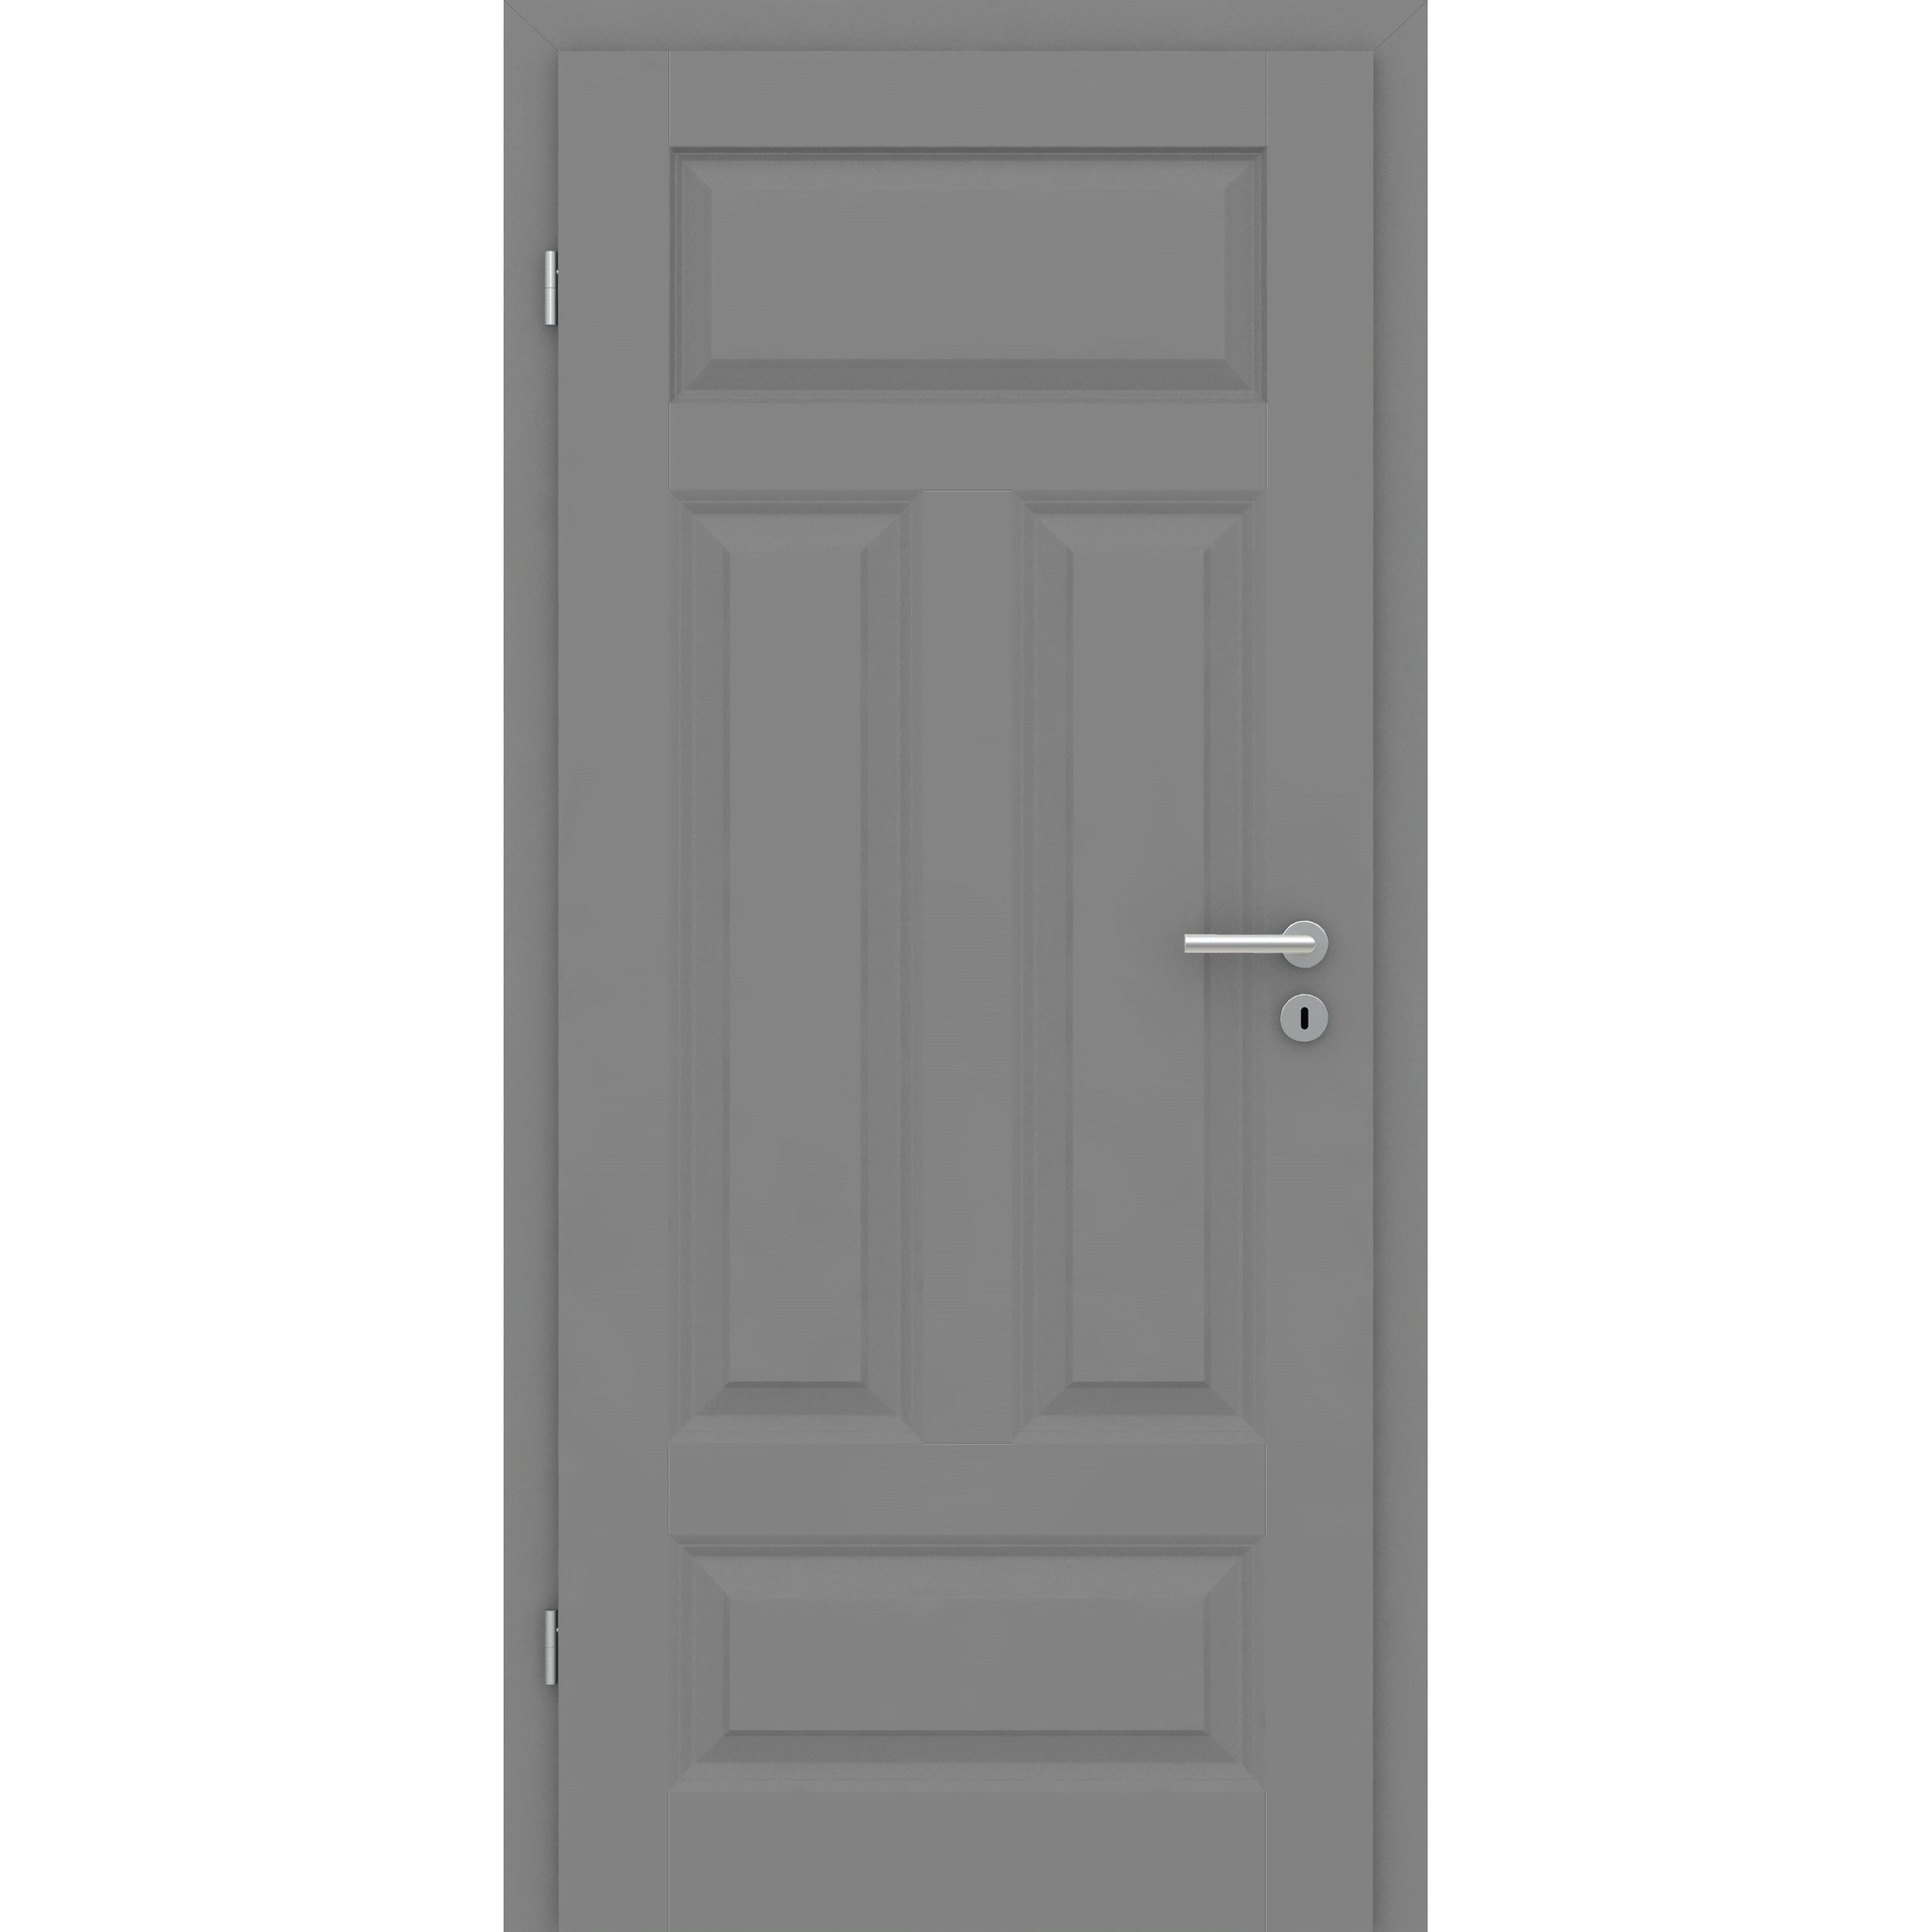 Wohnungseingangstür mit Zarge grau 4 Kassetten Quer Designkante SK3 / KK3 - Modell Stiltür KQ47